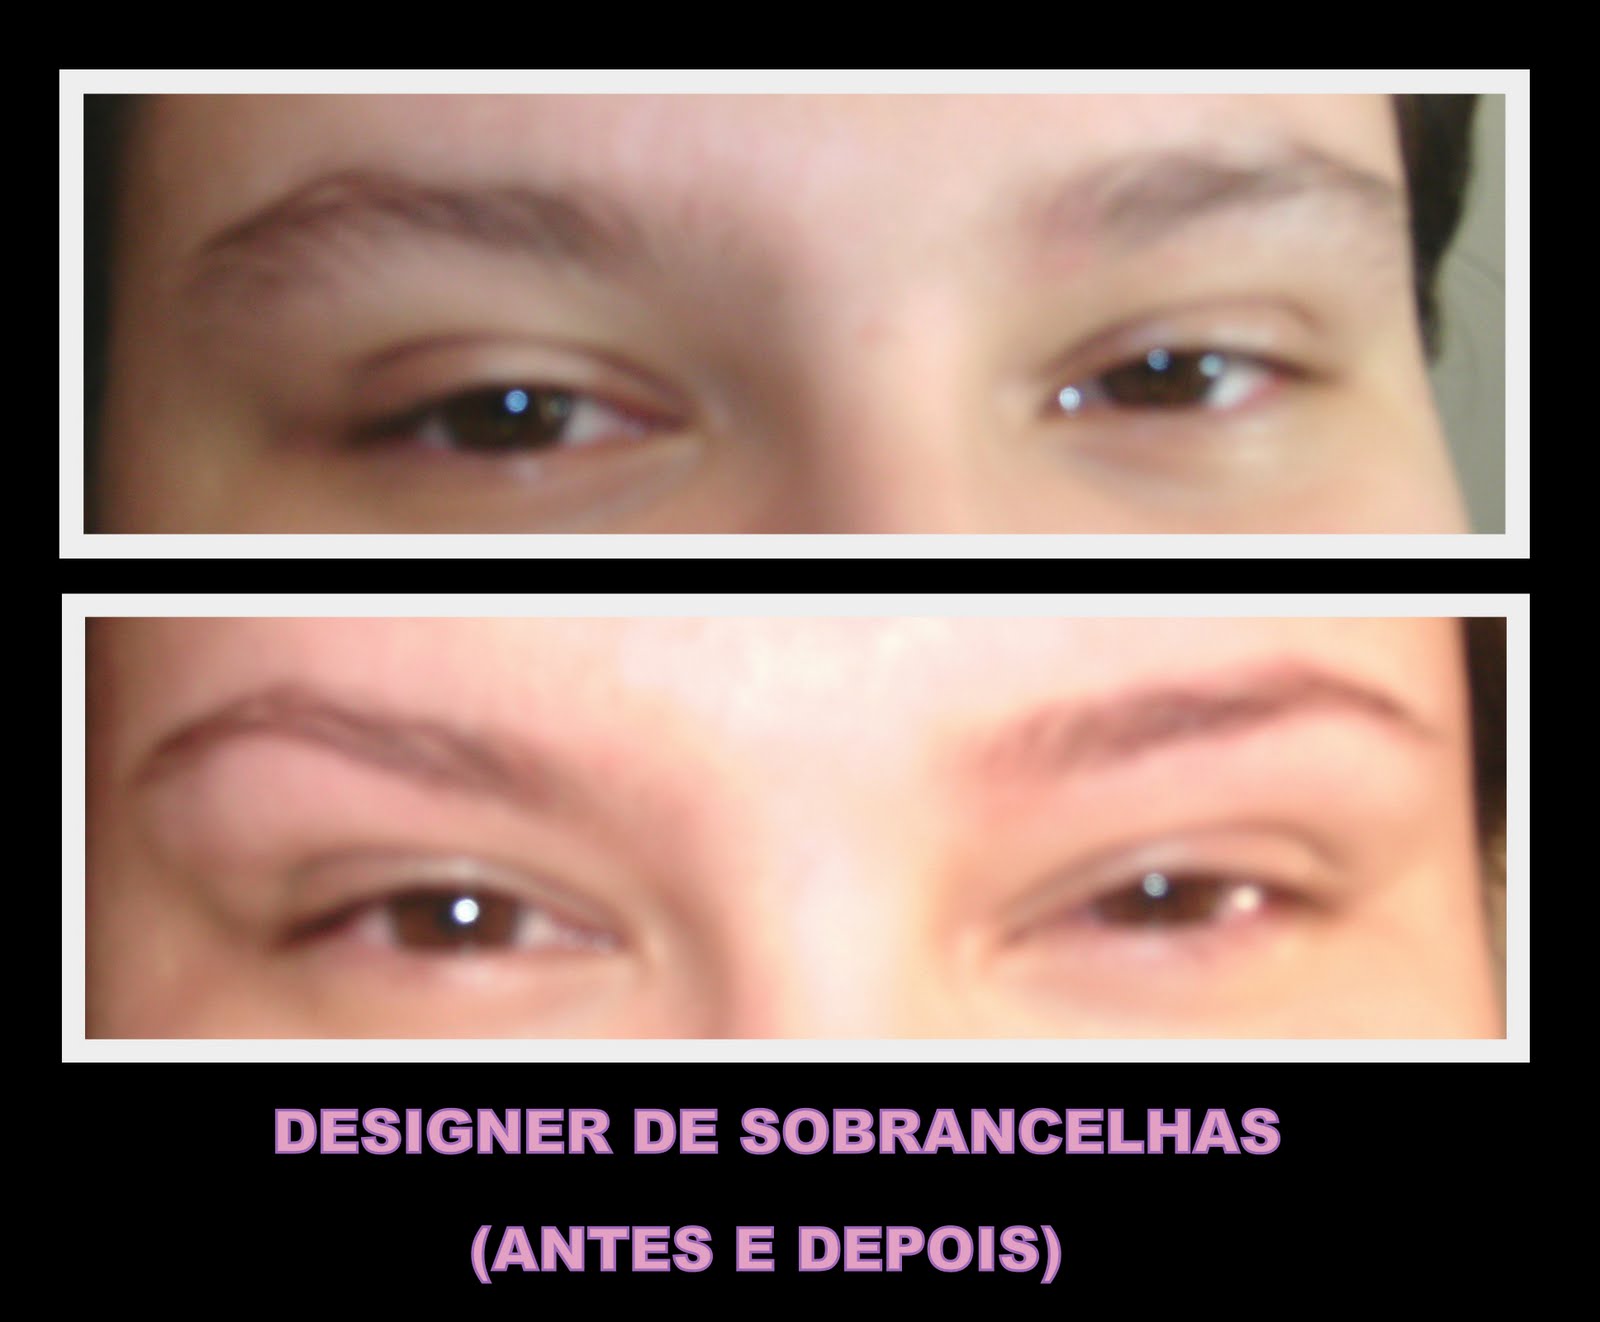 AndrÃ© Galhego Make-up: DESIGNER DE SOBRANCELHAS - (ANTES E DEPOIS)